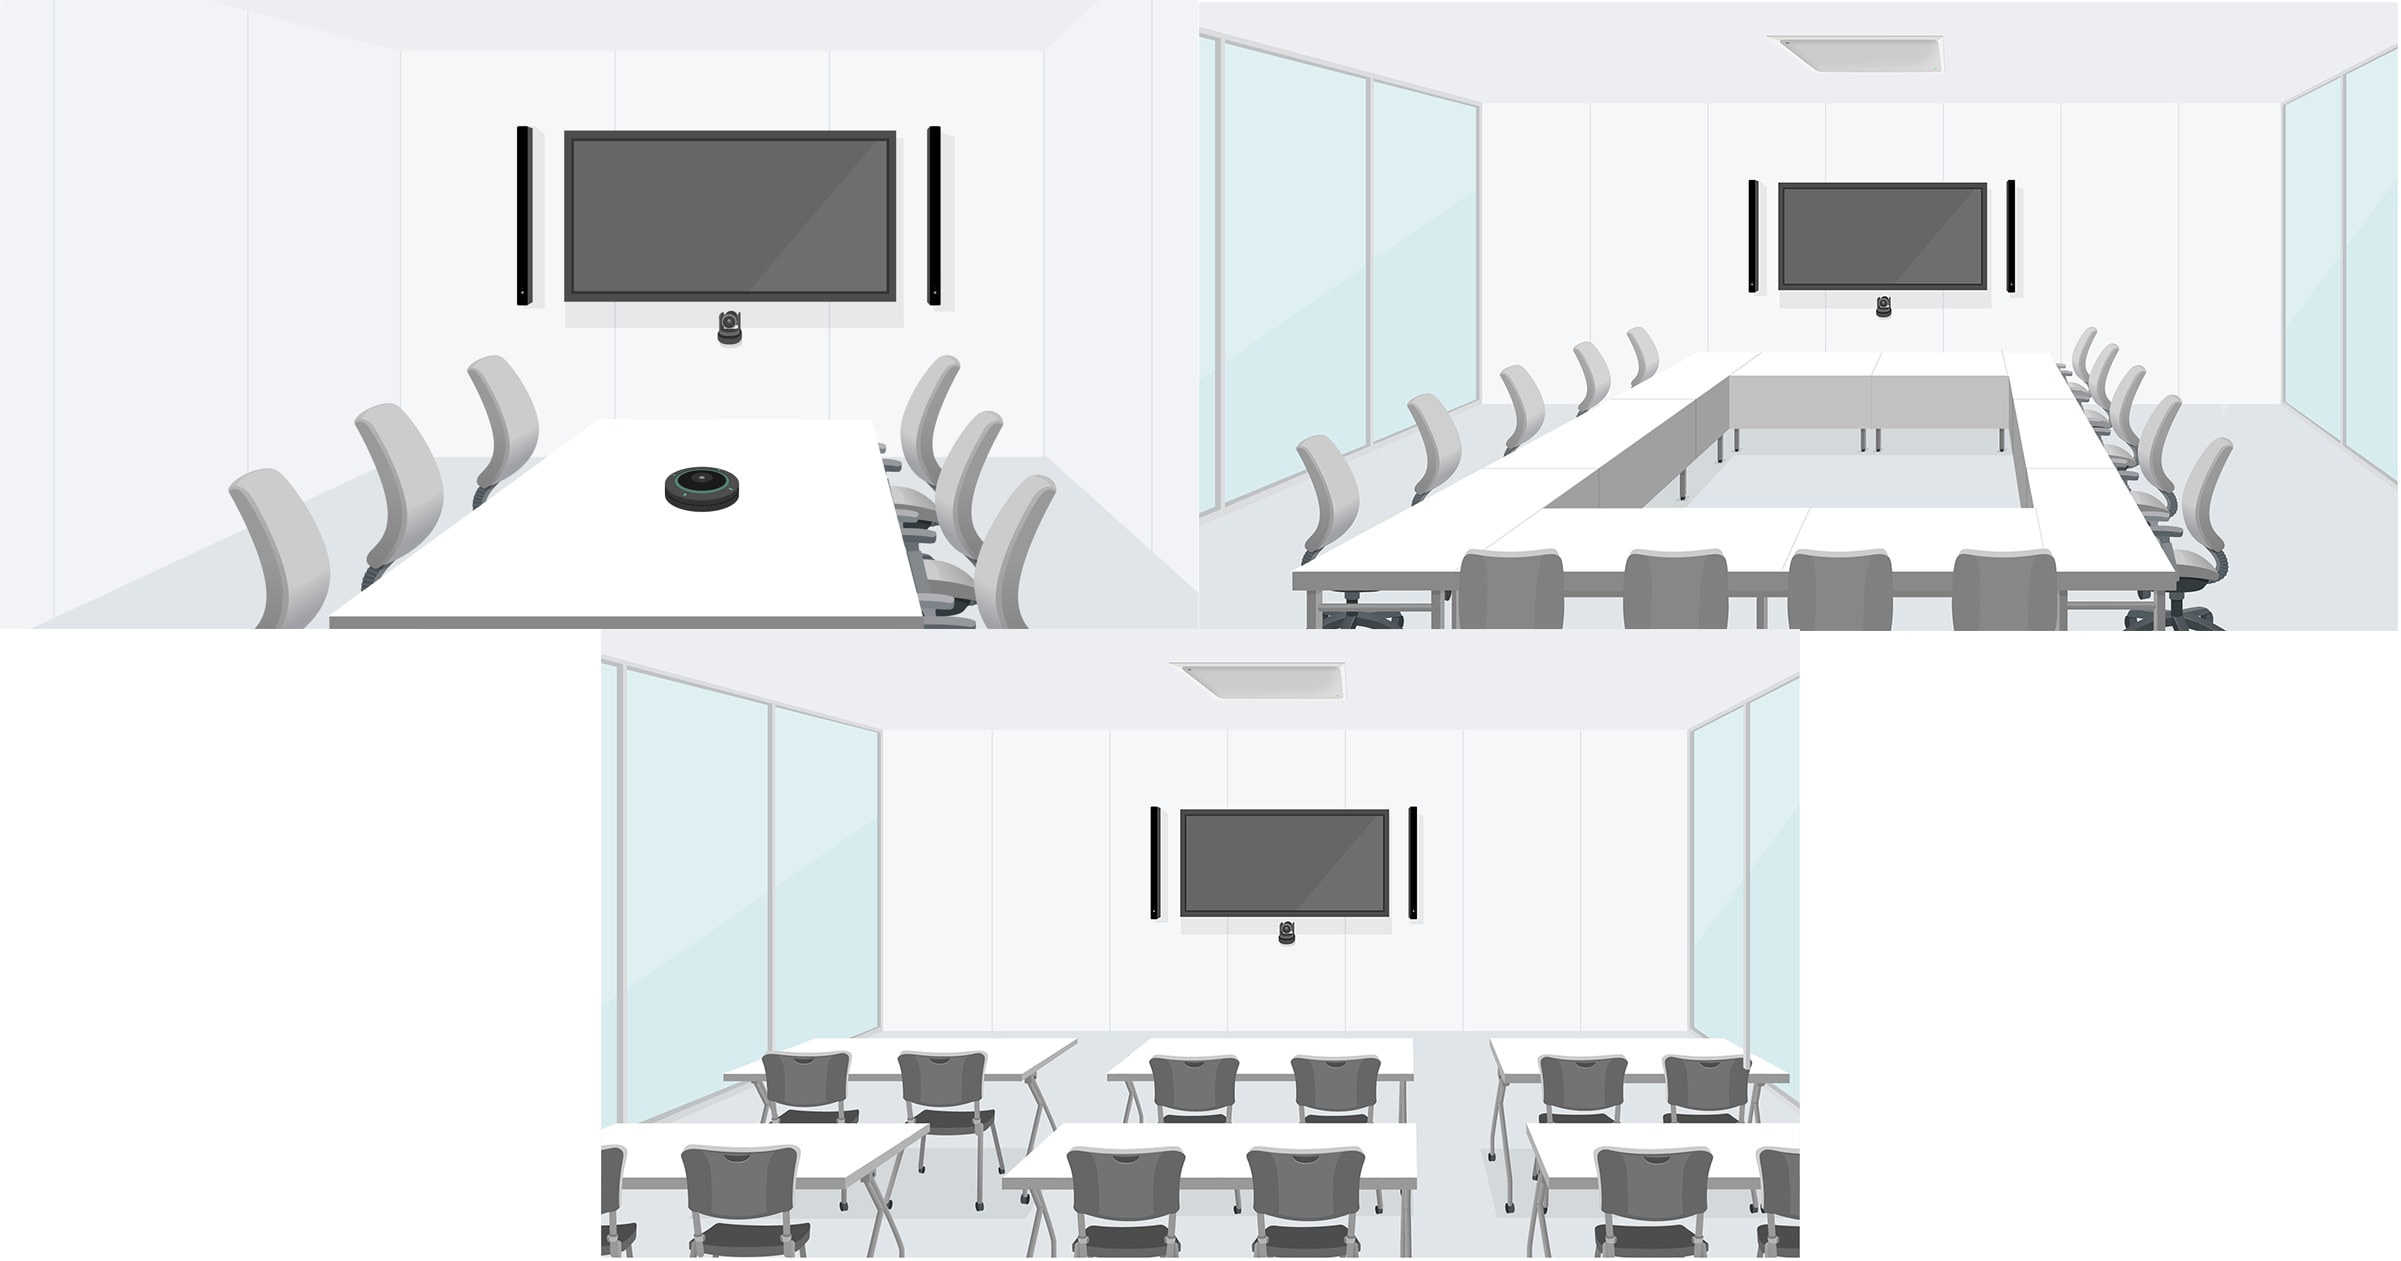 広い講義室から小規模なオフィス会議室まで柔軟に対応